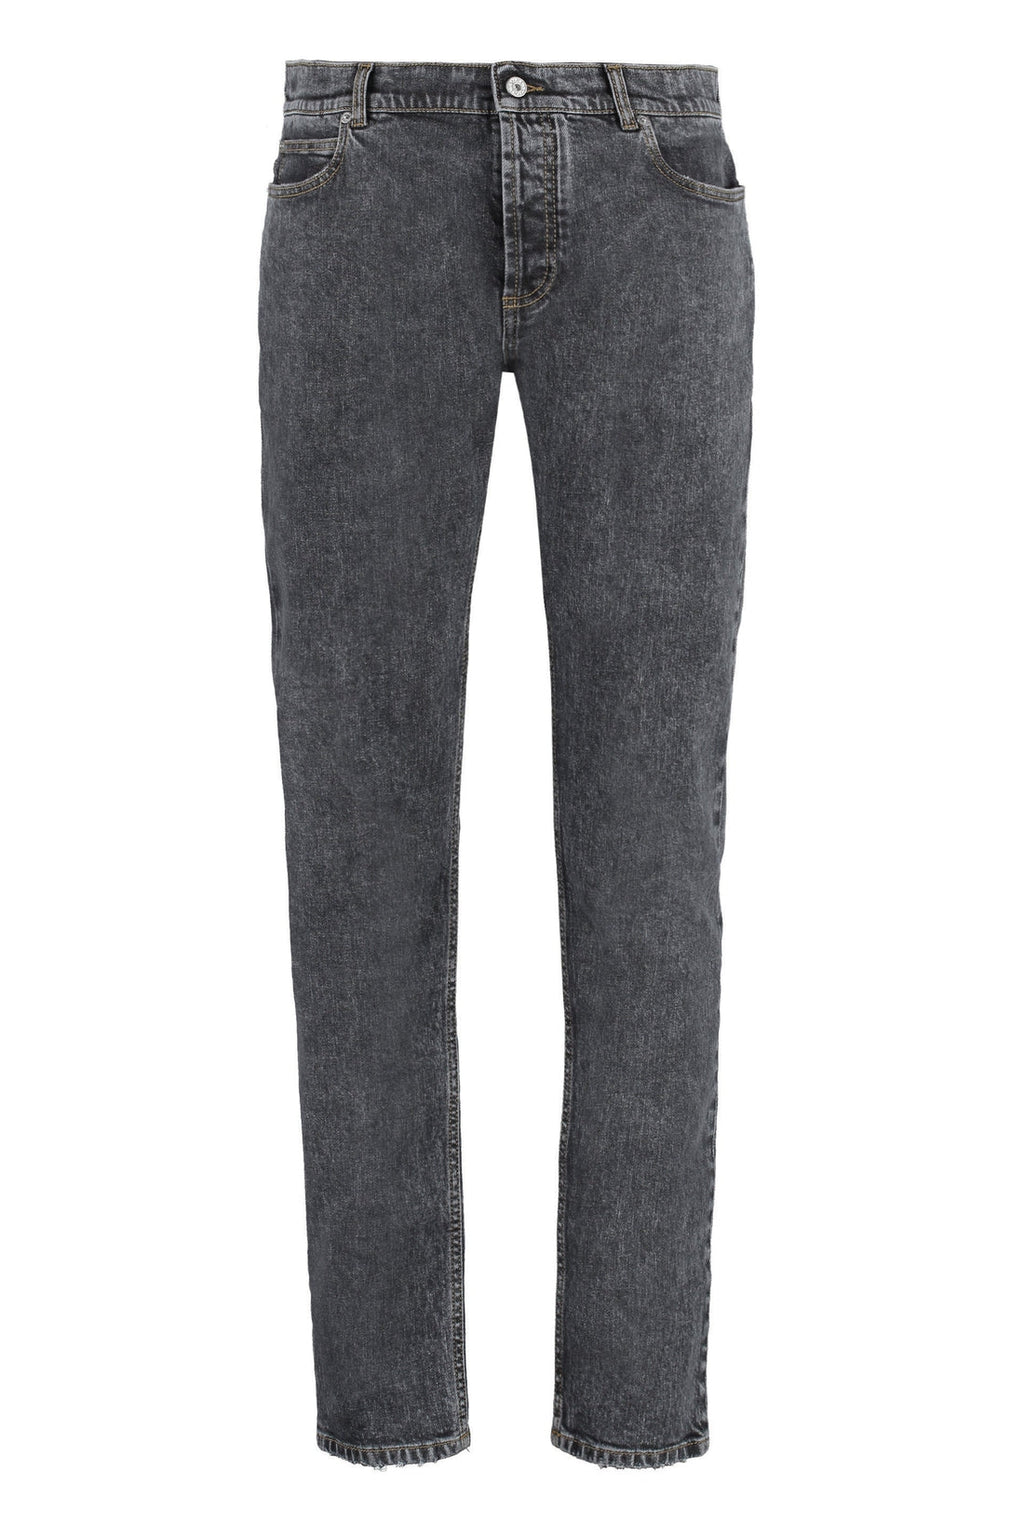 Balmain-OUTLET-SALE-5-pocket slim fit jeans-ARCHIVIST